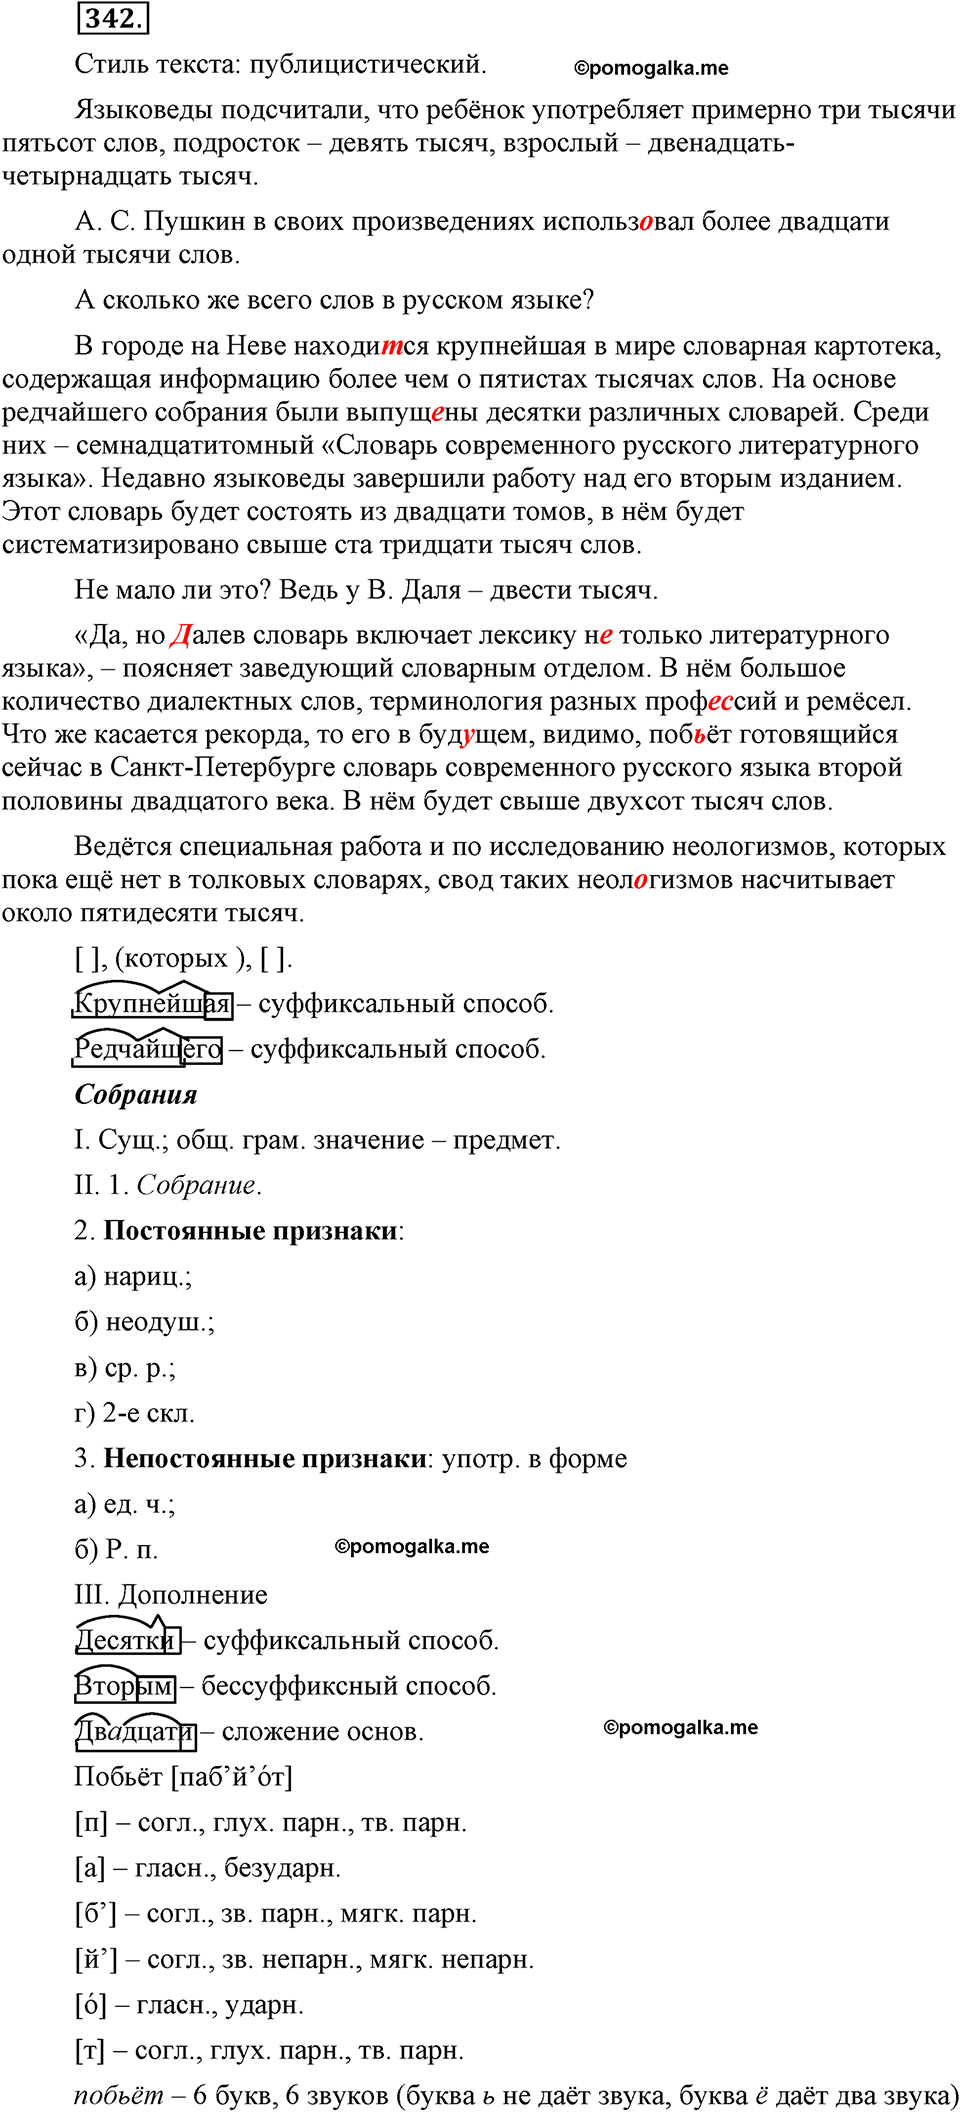 страница 156 номер 342 русский язык 9 класс Бархударов 2011 год